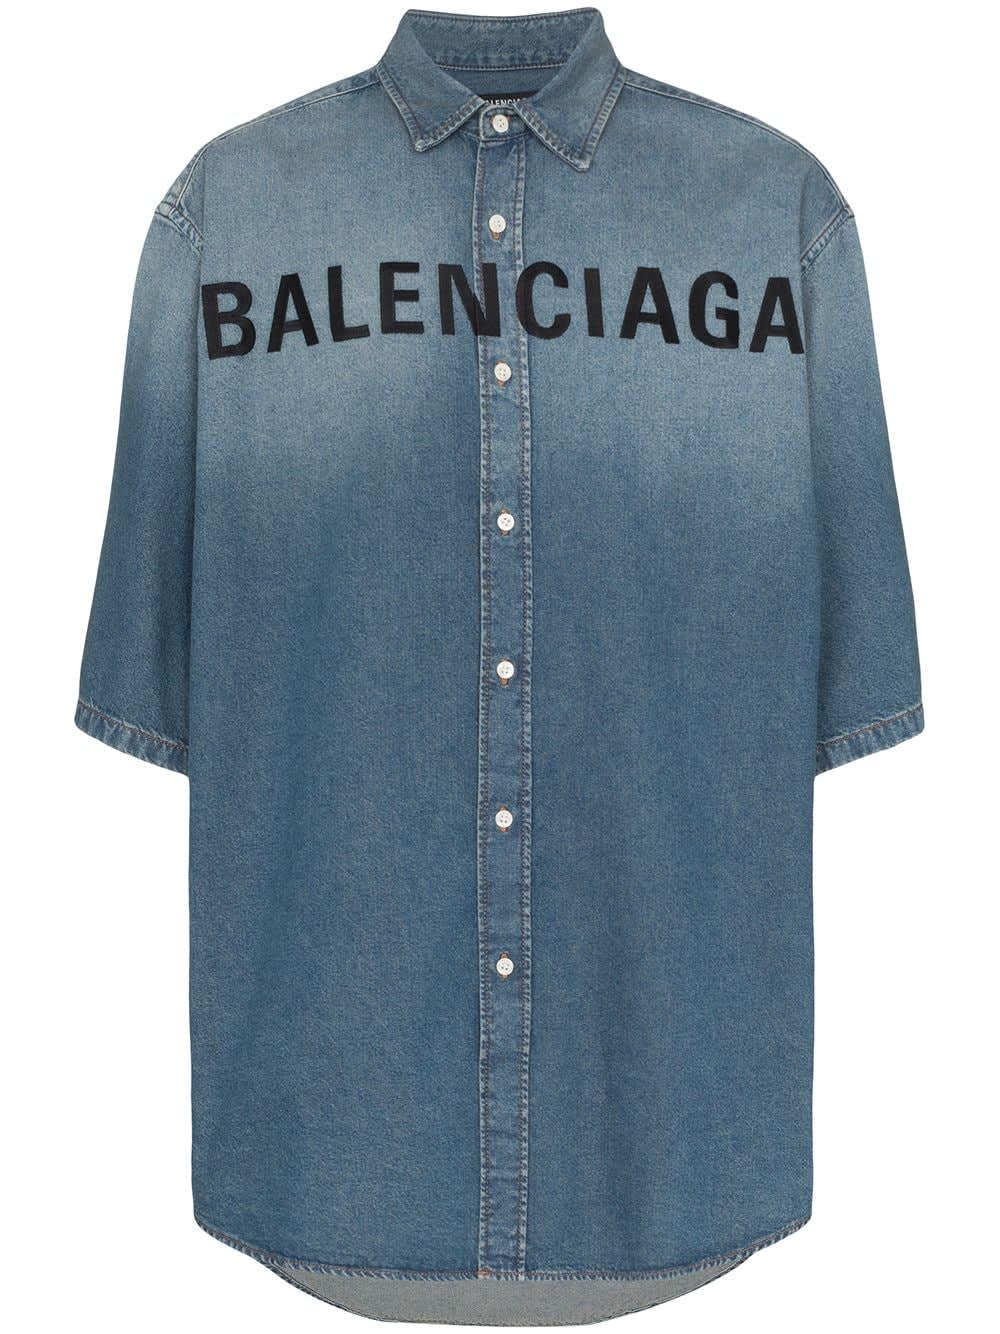 vintage balenciaga shirt